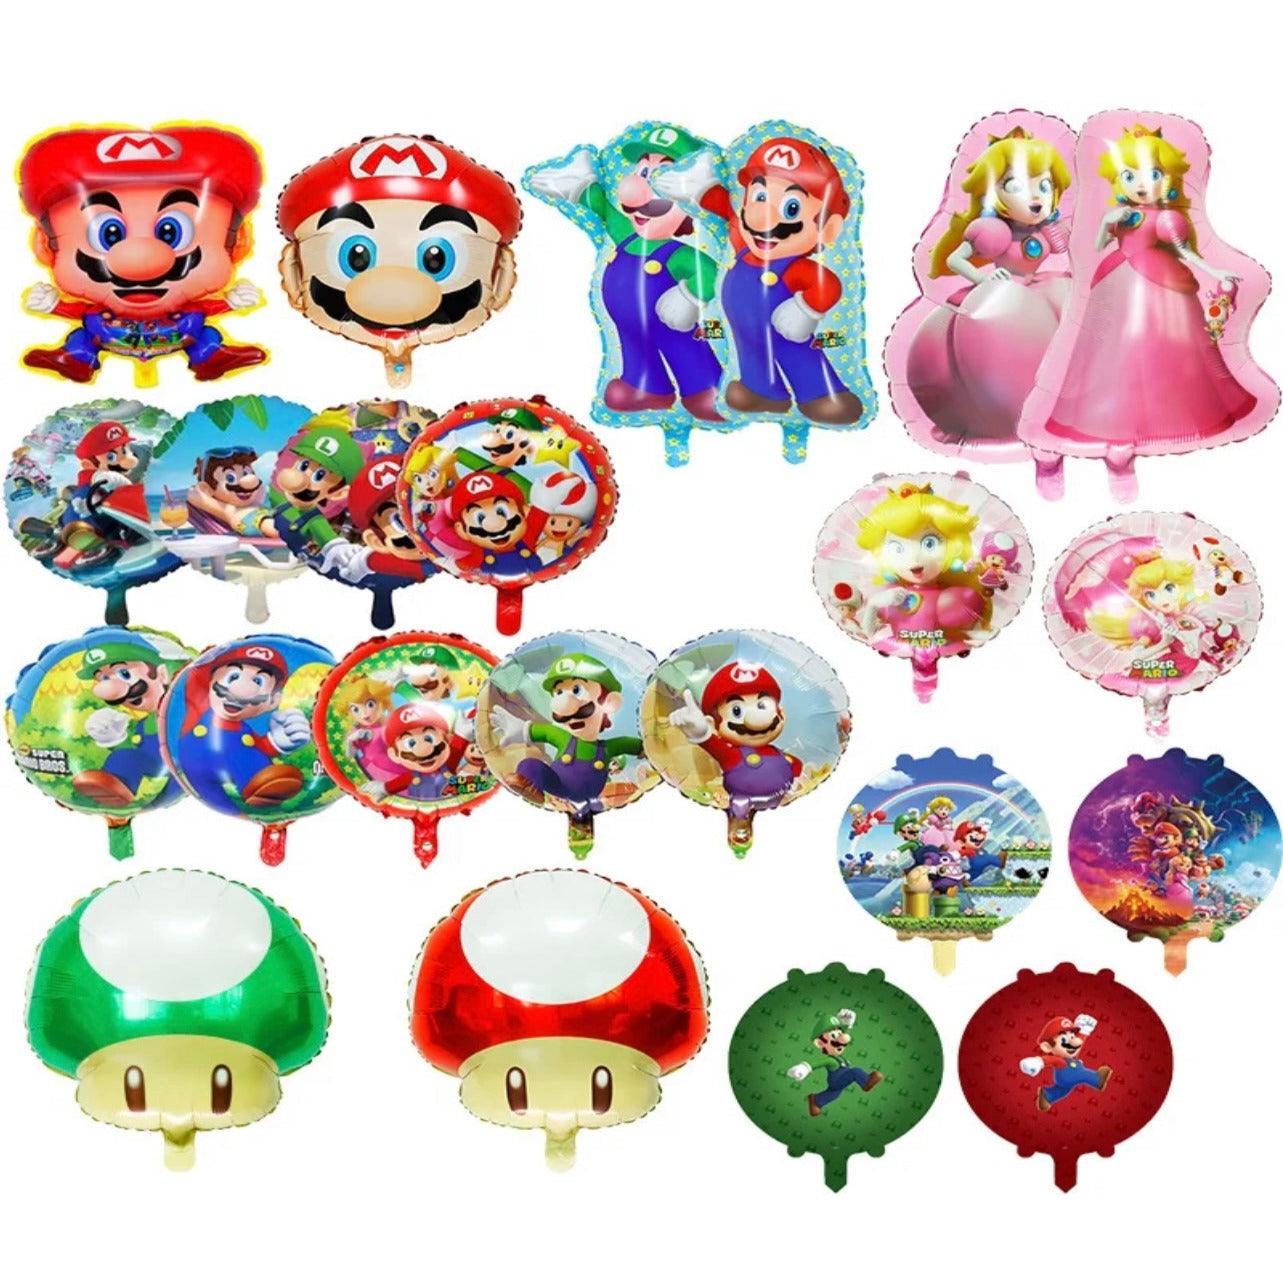 Mario & Luigi Balloons - Expat Life Style